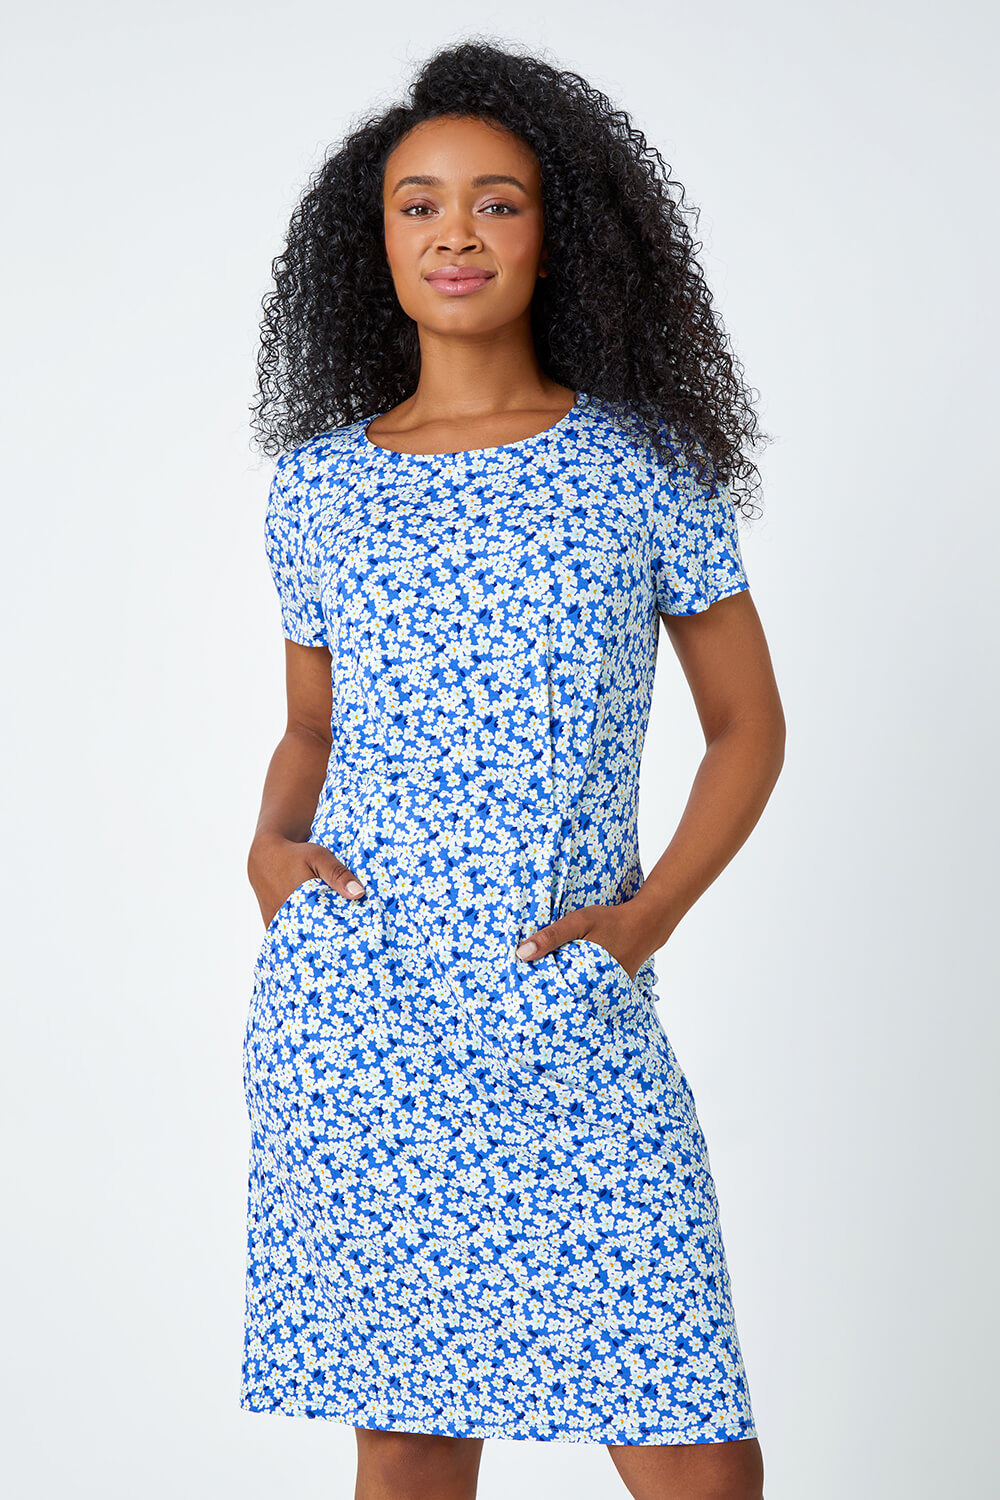 Blue Ditsy Floral Pocket Stretch Dress, Image 2 of 5